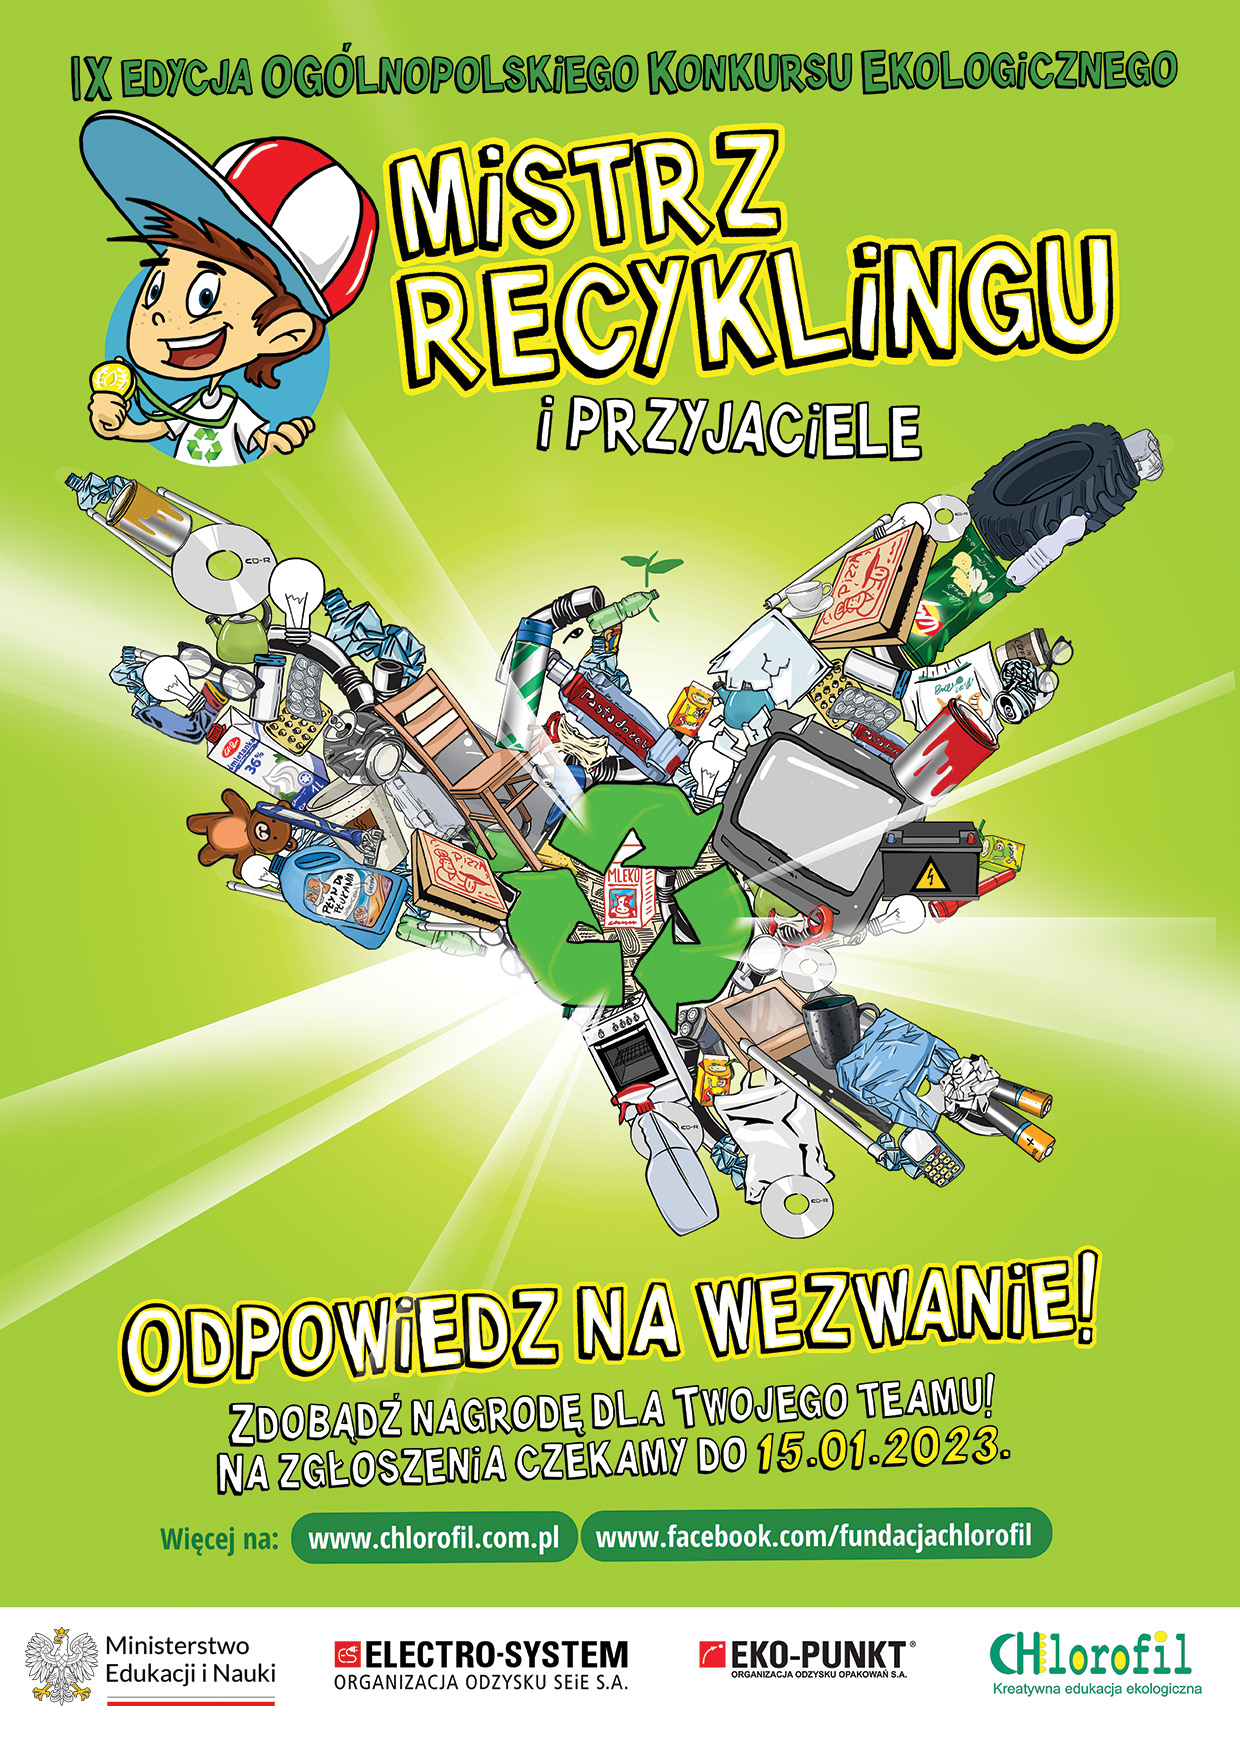 Plakat promujący IX edycja Ogólnopolskiego Konkursu Ekologicznego: Mistrz Recyklingu i Przyjaciele organizowanego przez Fundację Chlorofil